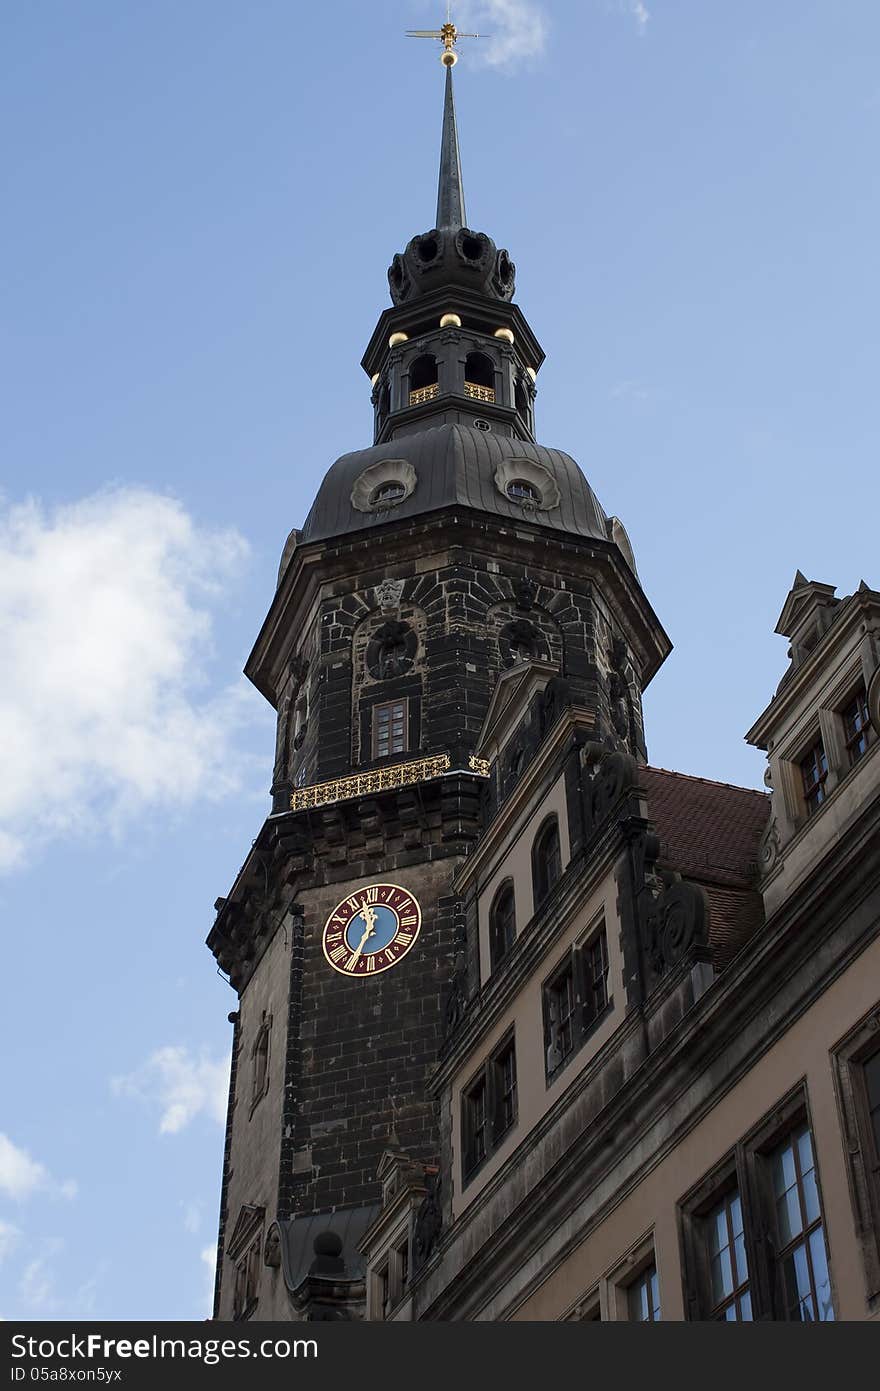 Dresden Tower of Katholische Hofkirche near Zwinger